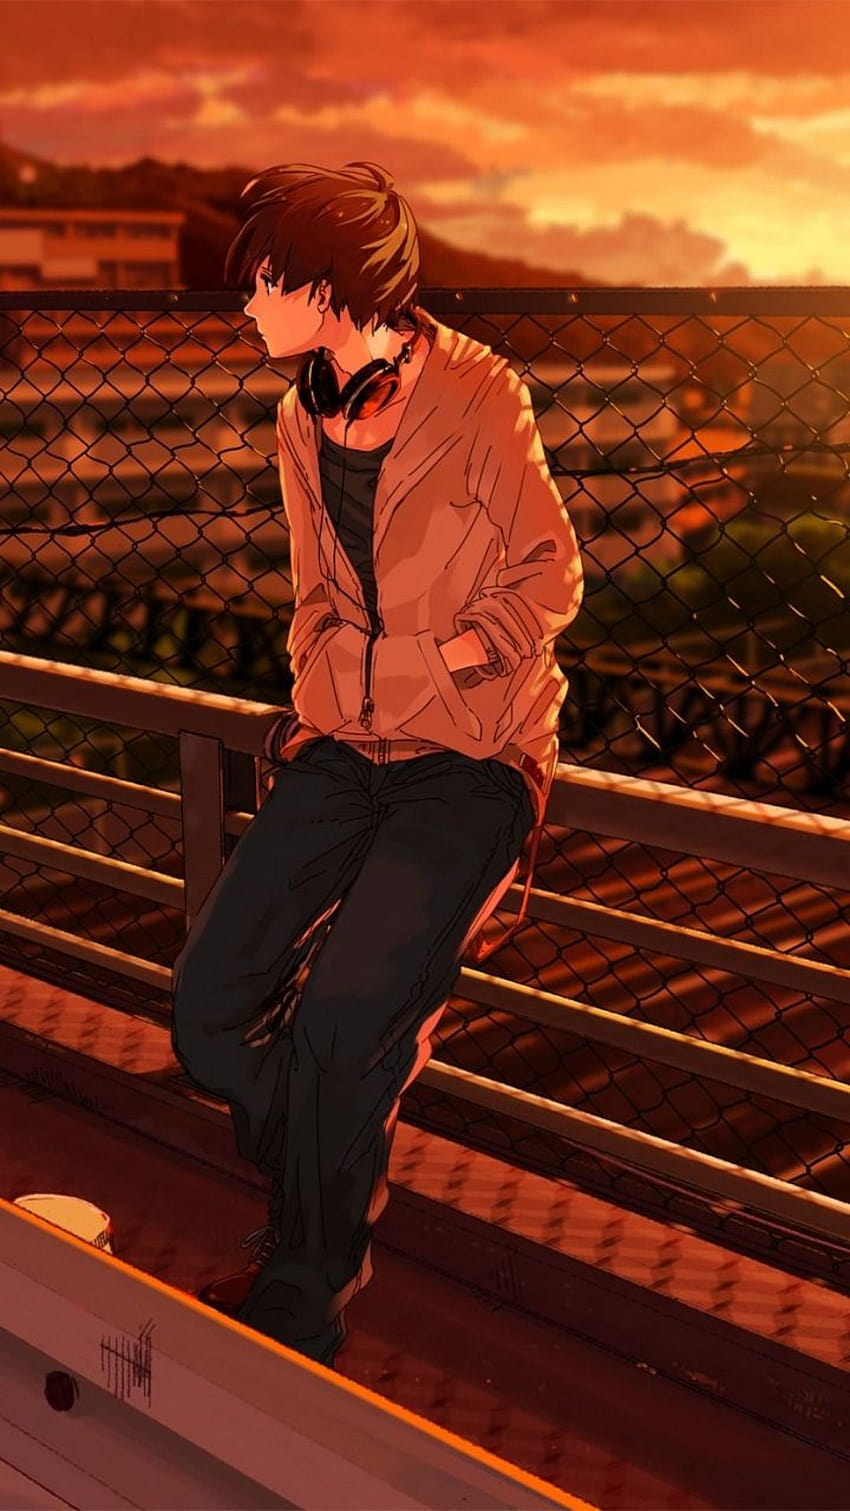 112 Wallpaper Sad Boy Anime 4k For FREE - MyWeb